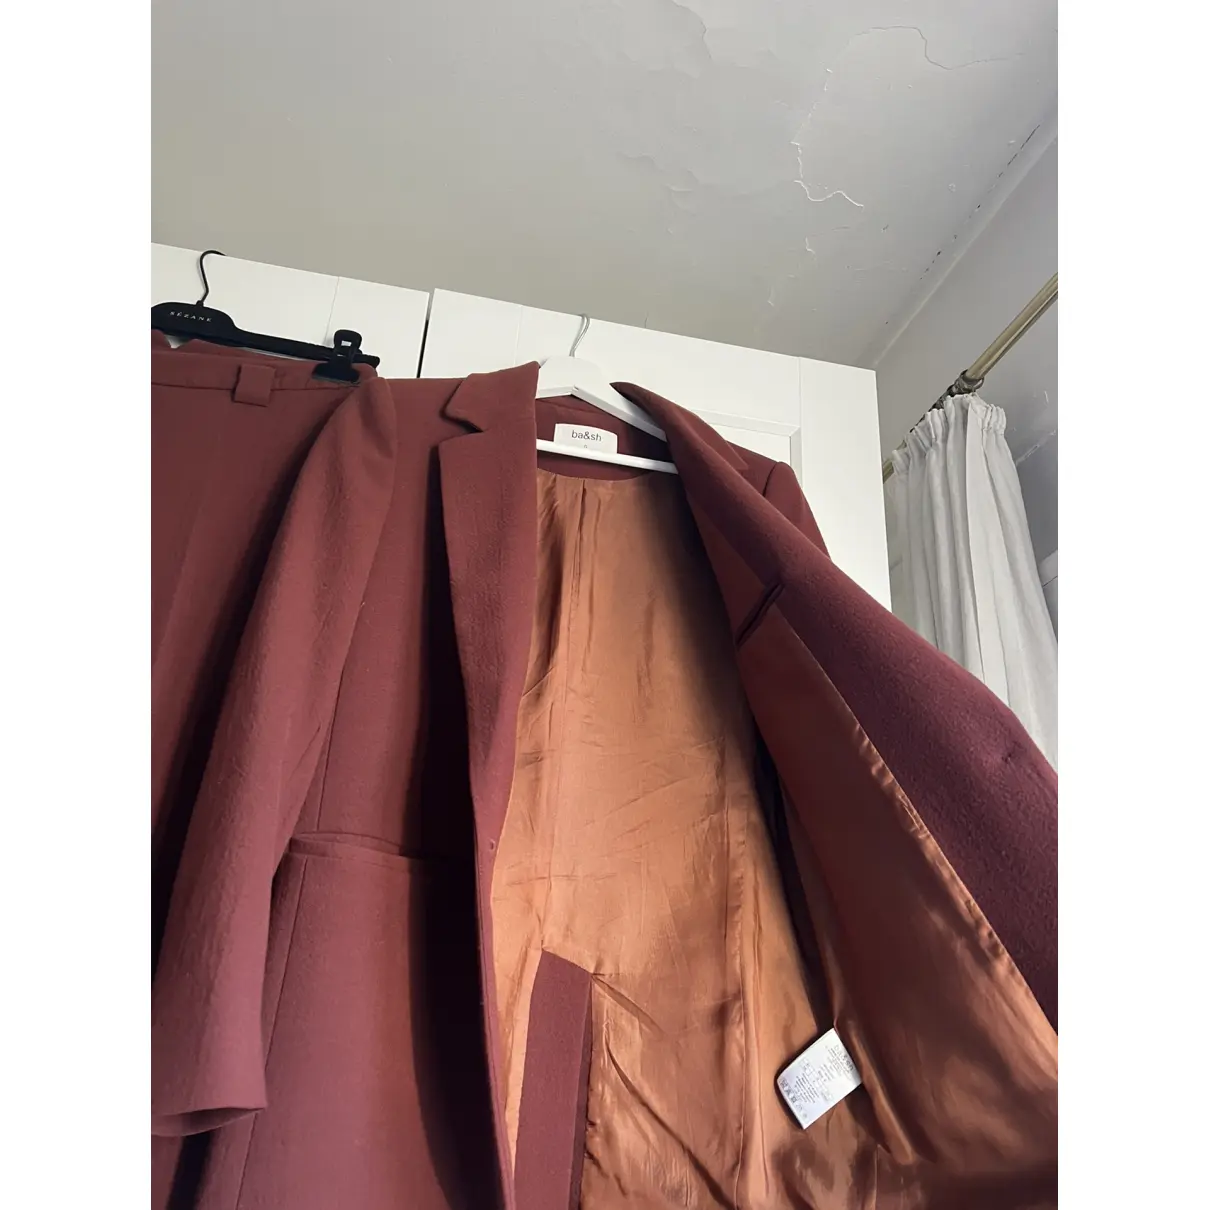 Buy Ba&sh Fall Winter 2019 suit jacket online